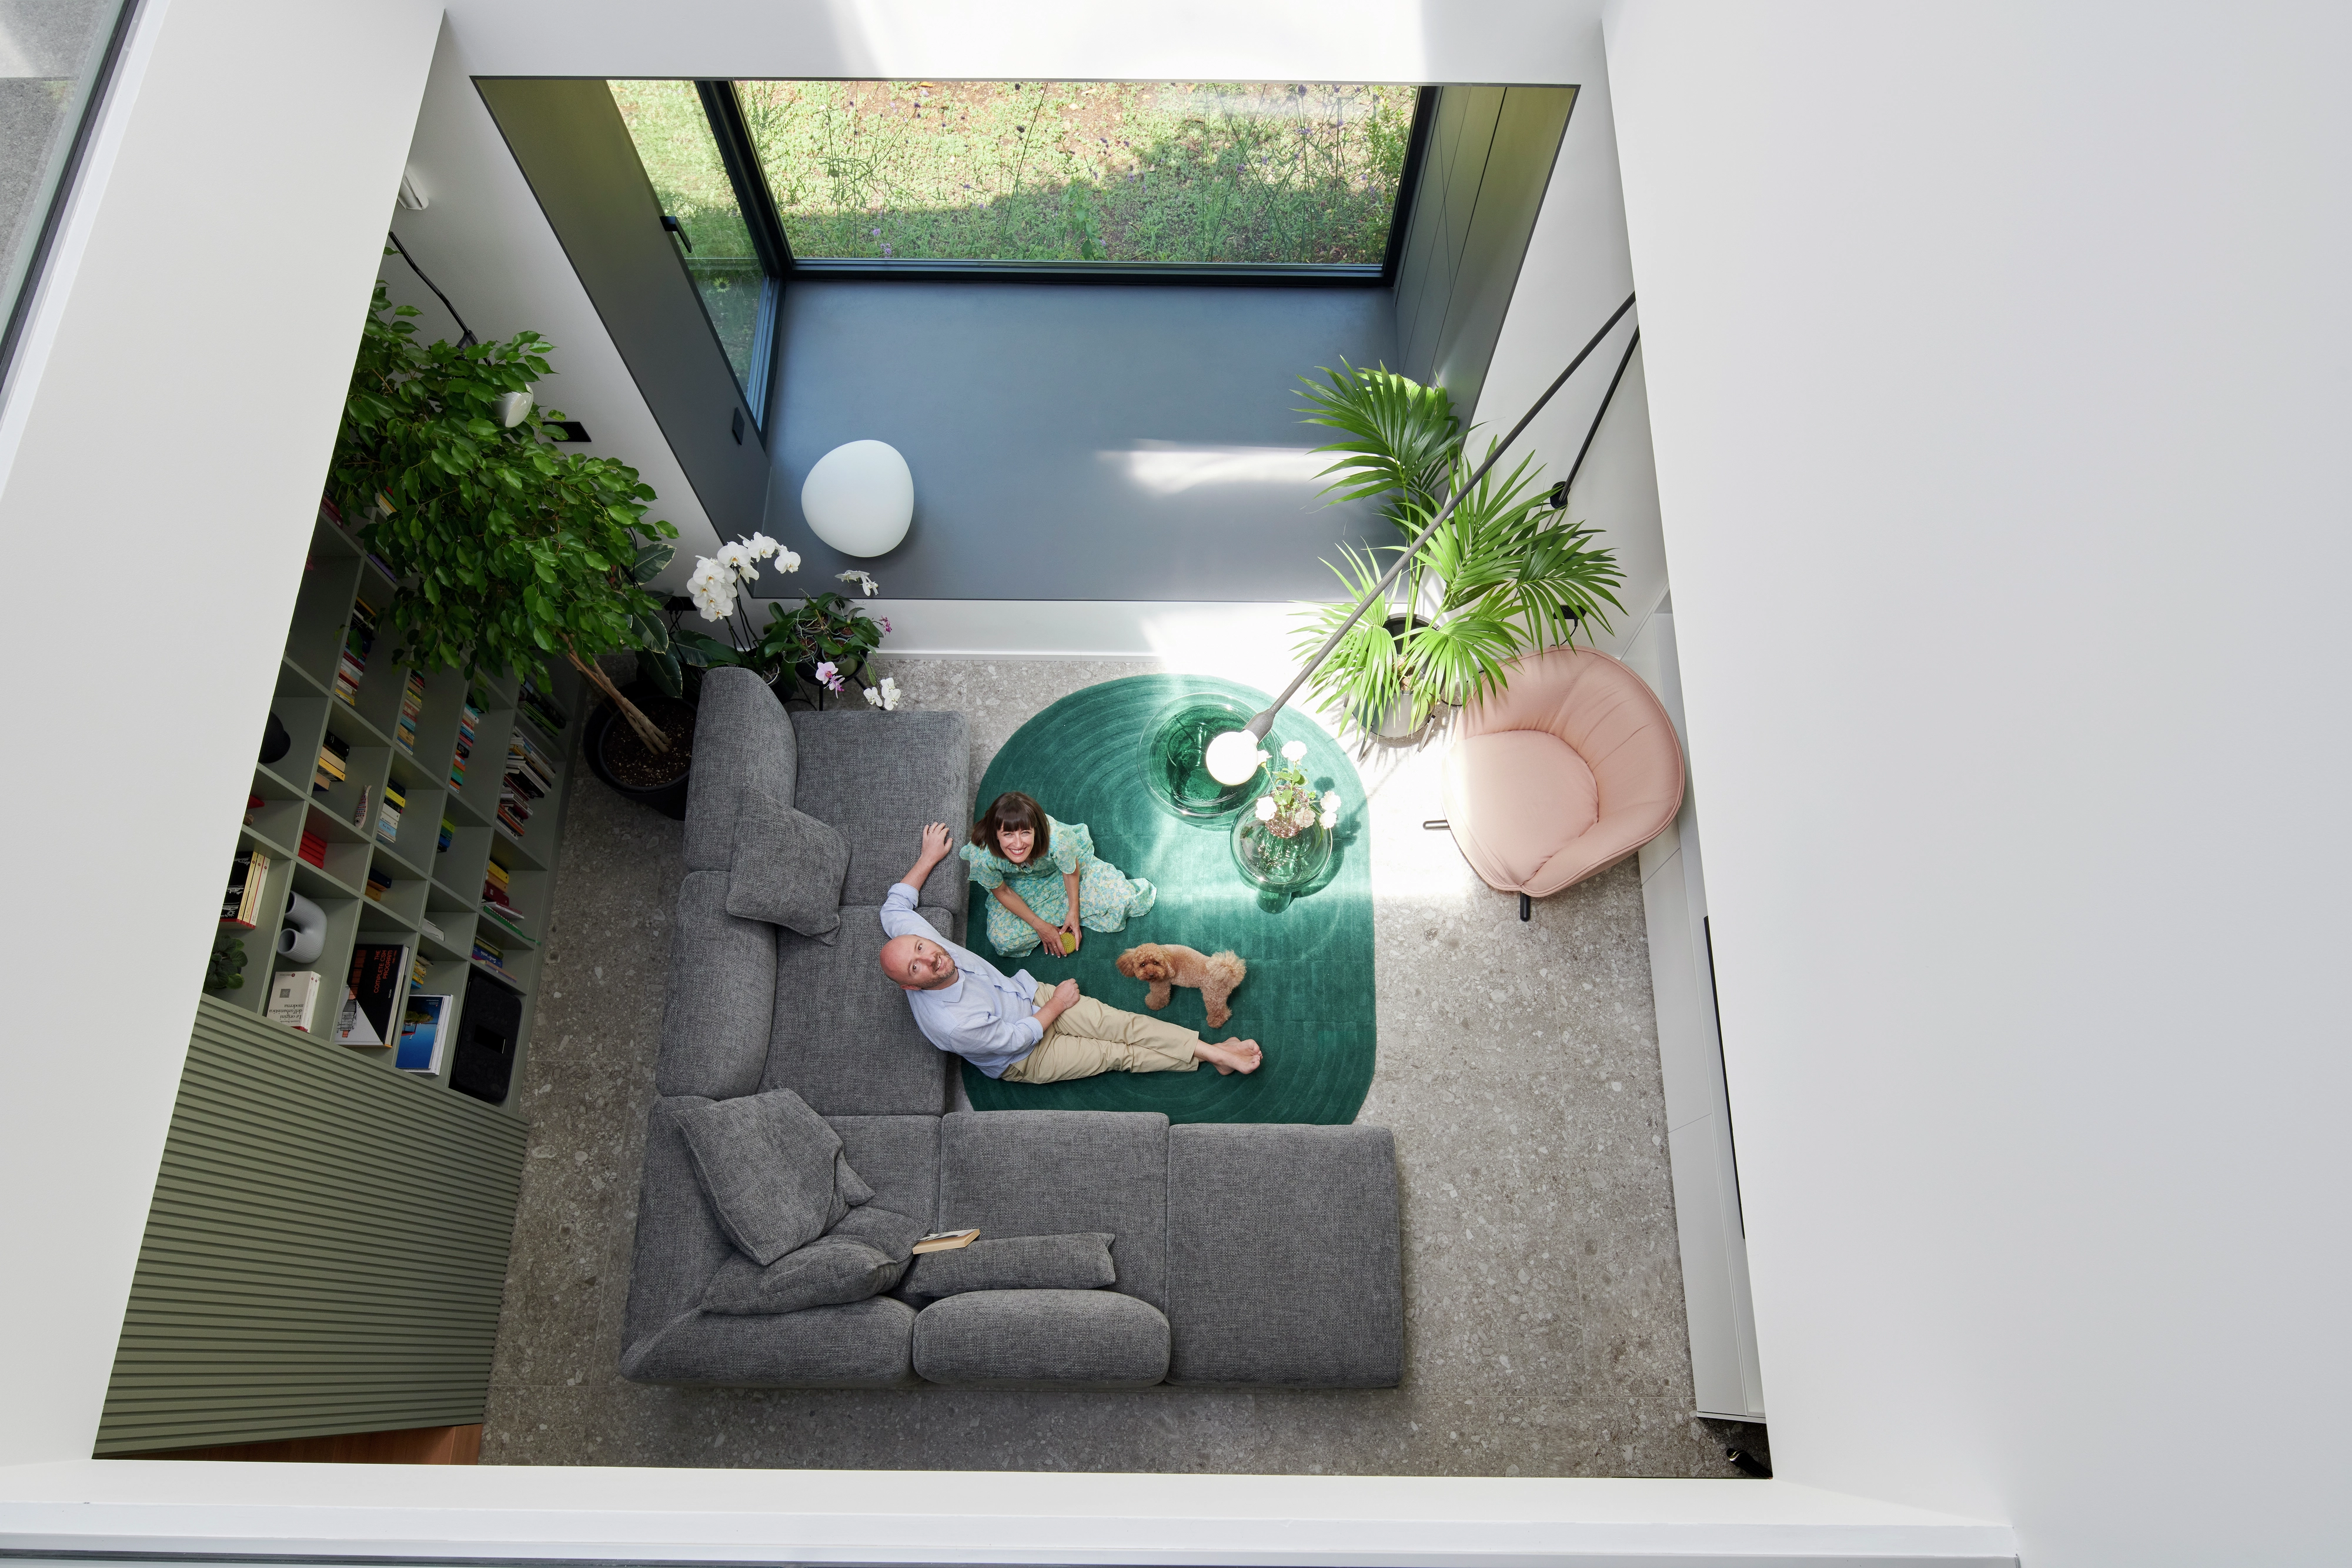 Salon moderne avec lumière naturelle provenant d'une fenêtre de toit VELUX, canapé gris, tapis vert, plantes et chaise rose.